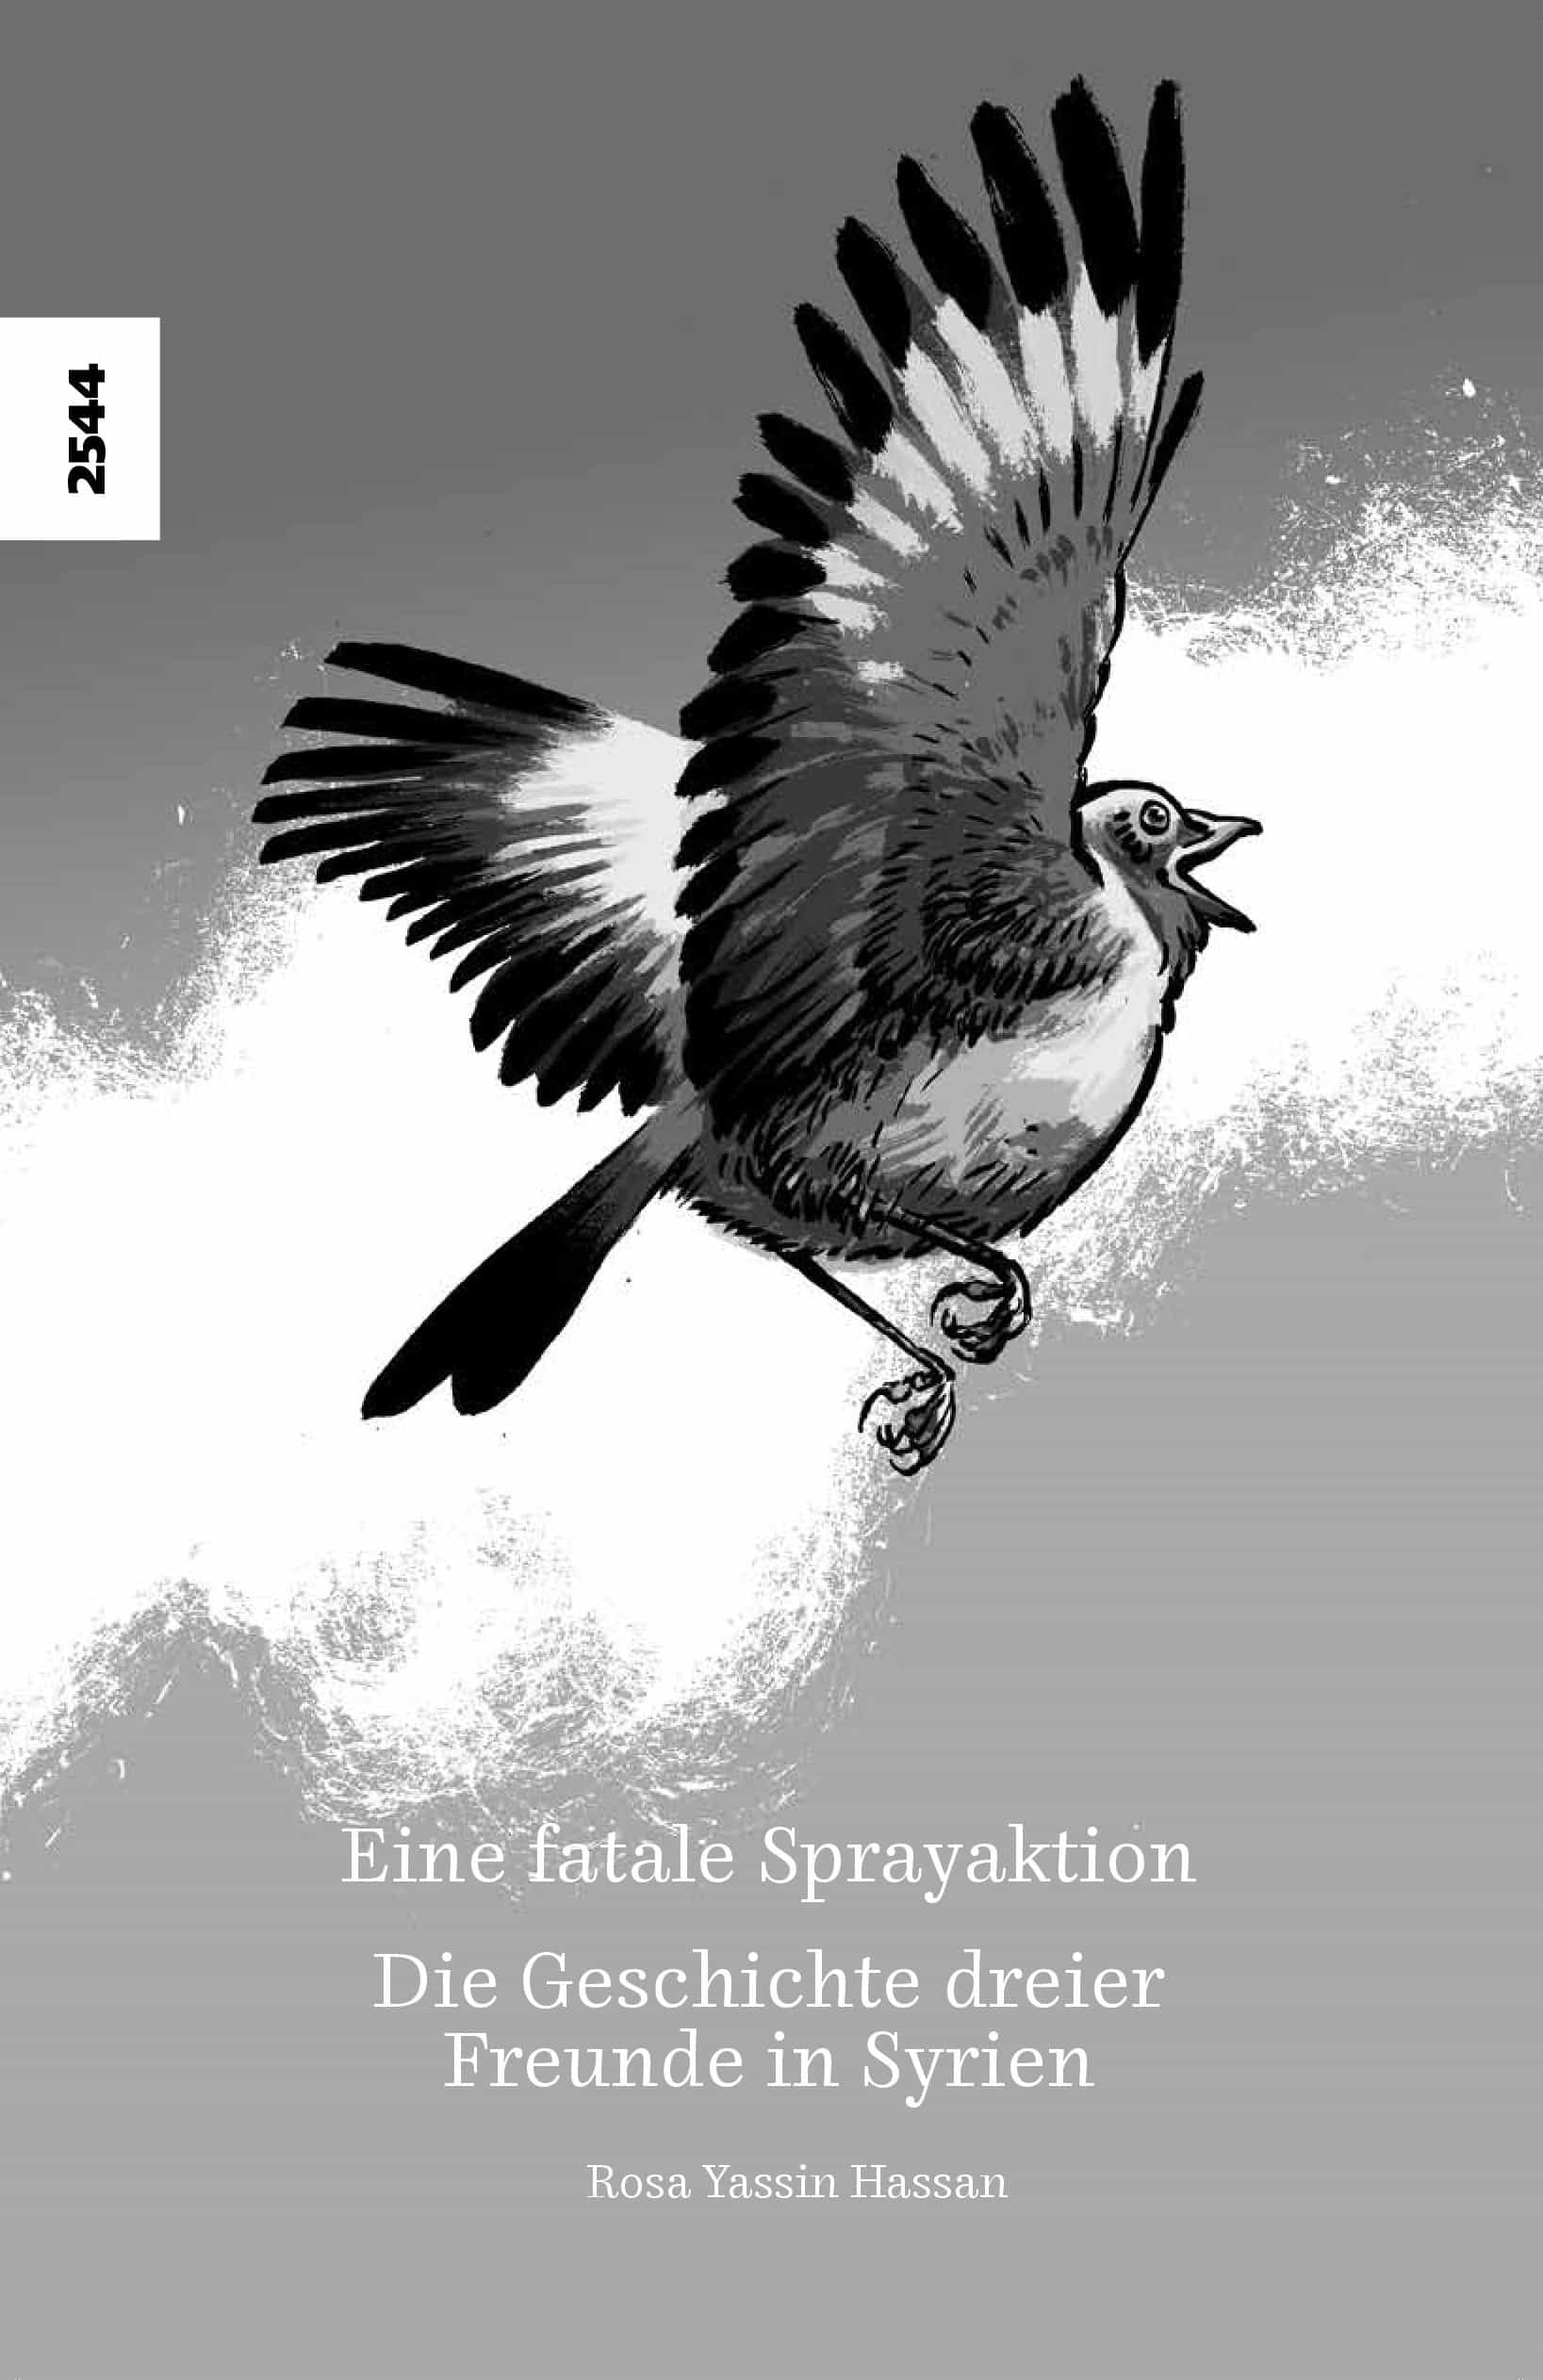 Eine fatale Sprayaktion - Die Geschichte dreier Freunde in Syrien, ein Buch von Rosa Yassin Hassan, Illustration B. Guedel, SJW